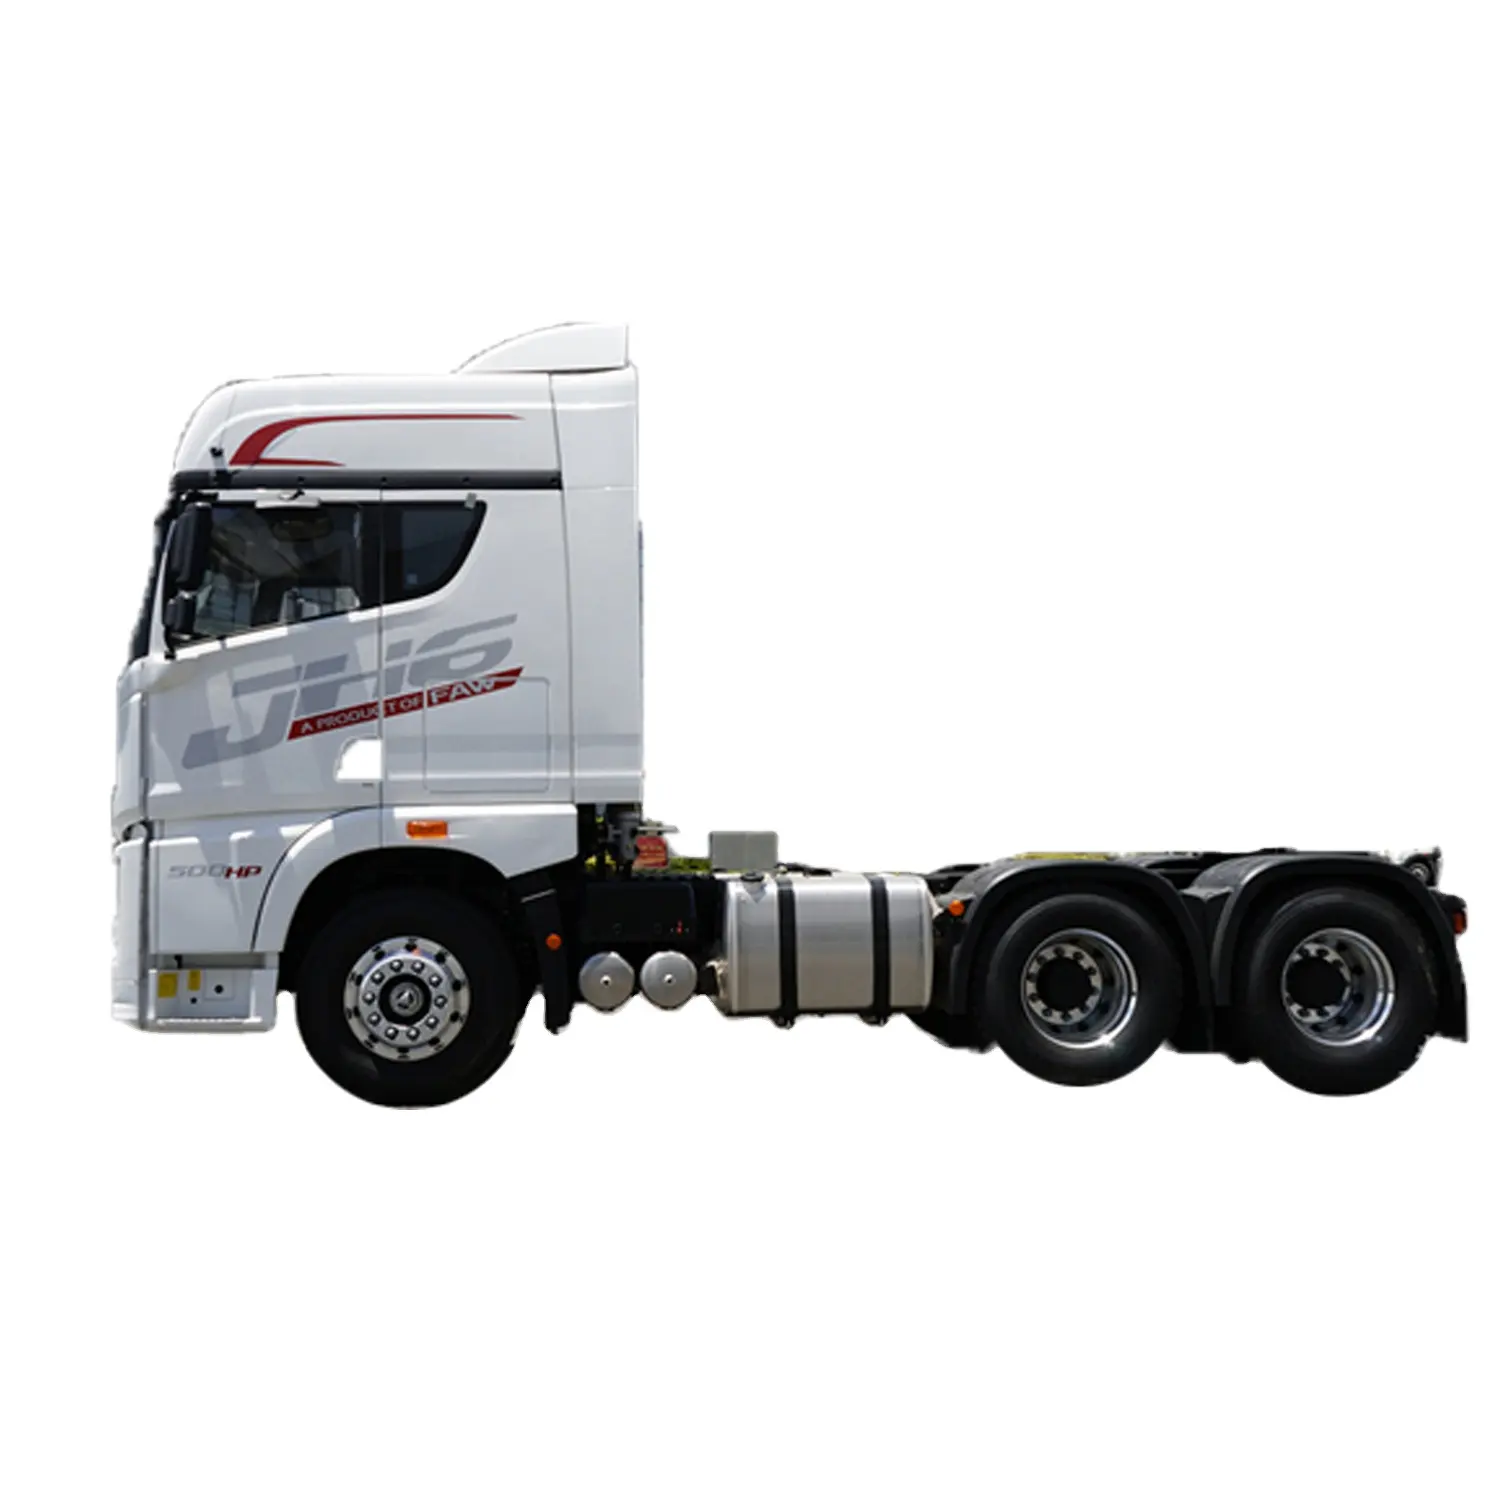 Faw Cargo Truck Fabricante original chino Nuevo Tracción en la rueda derecha Mejor plataforma de camiones ligeros Camión de carga